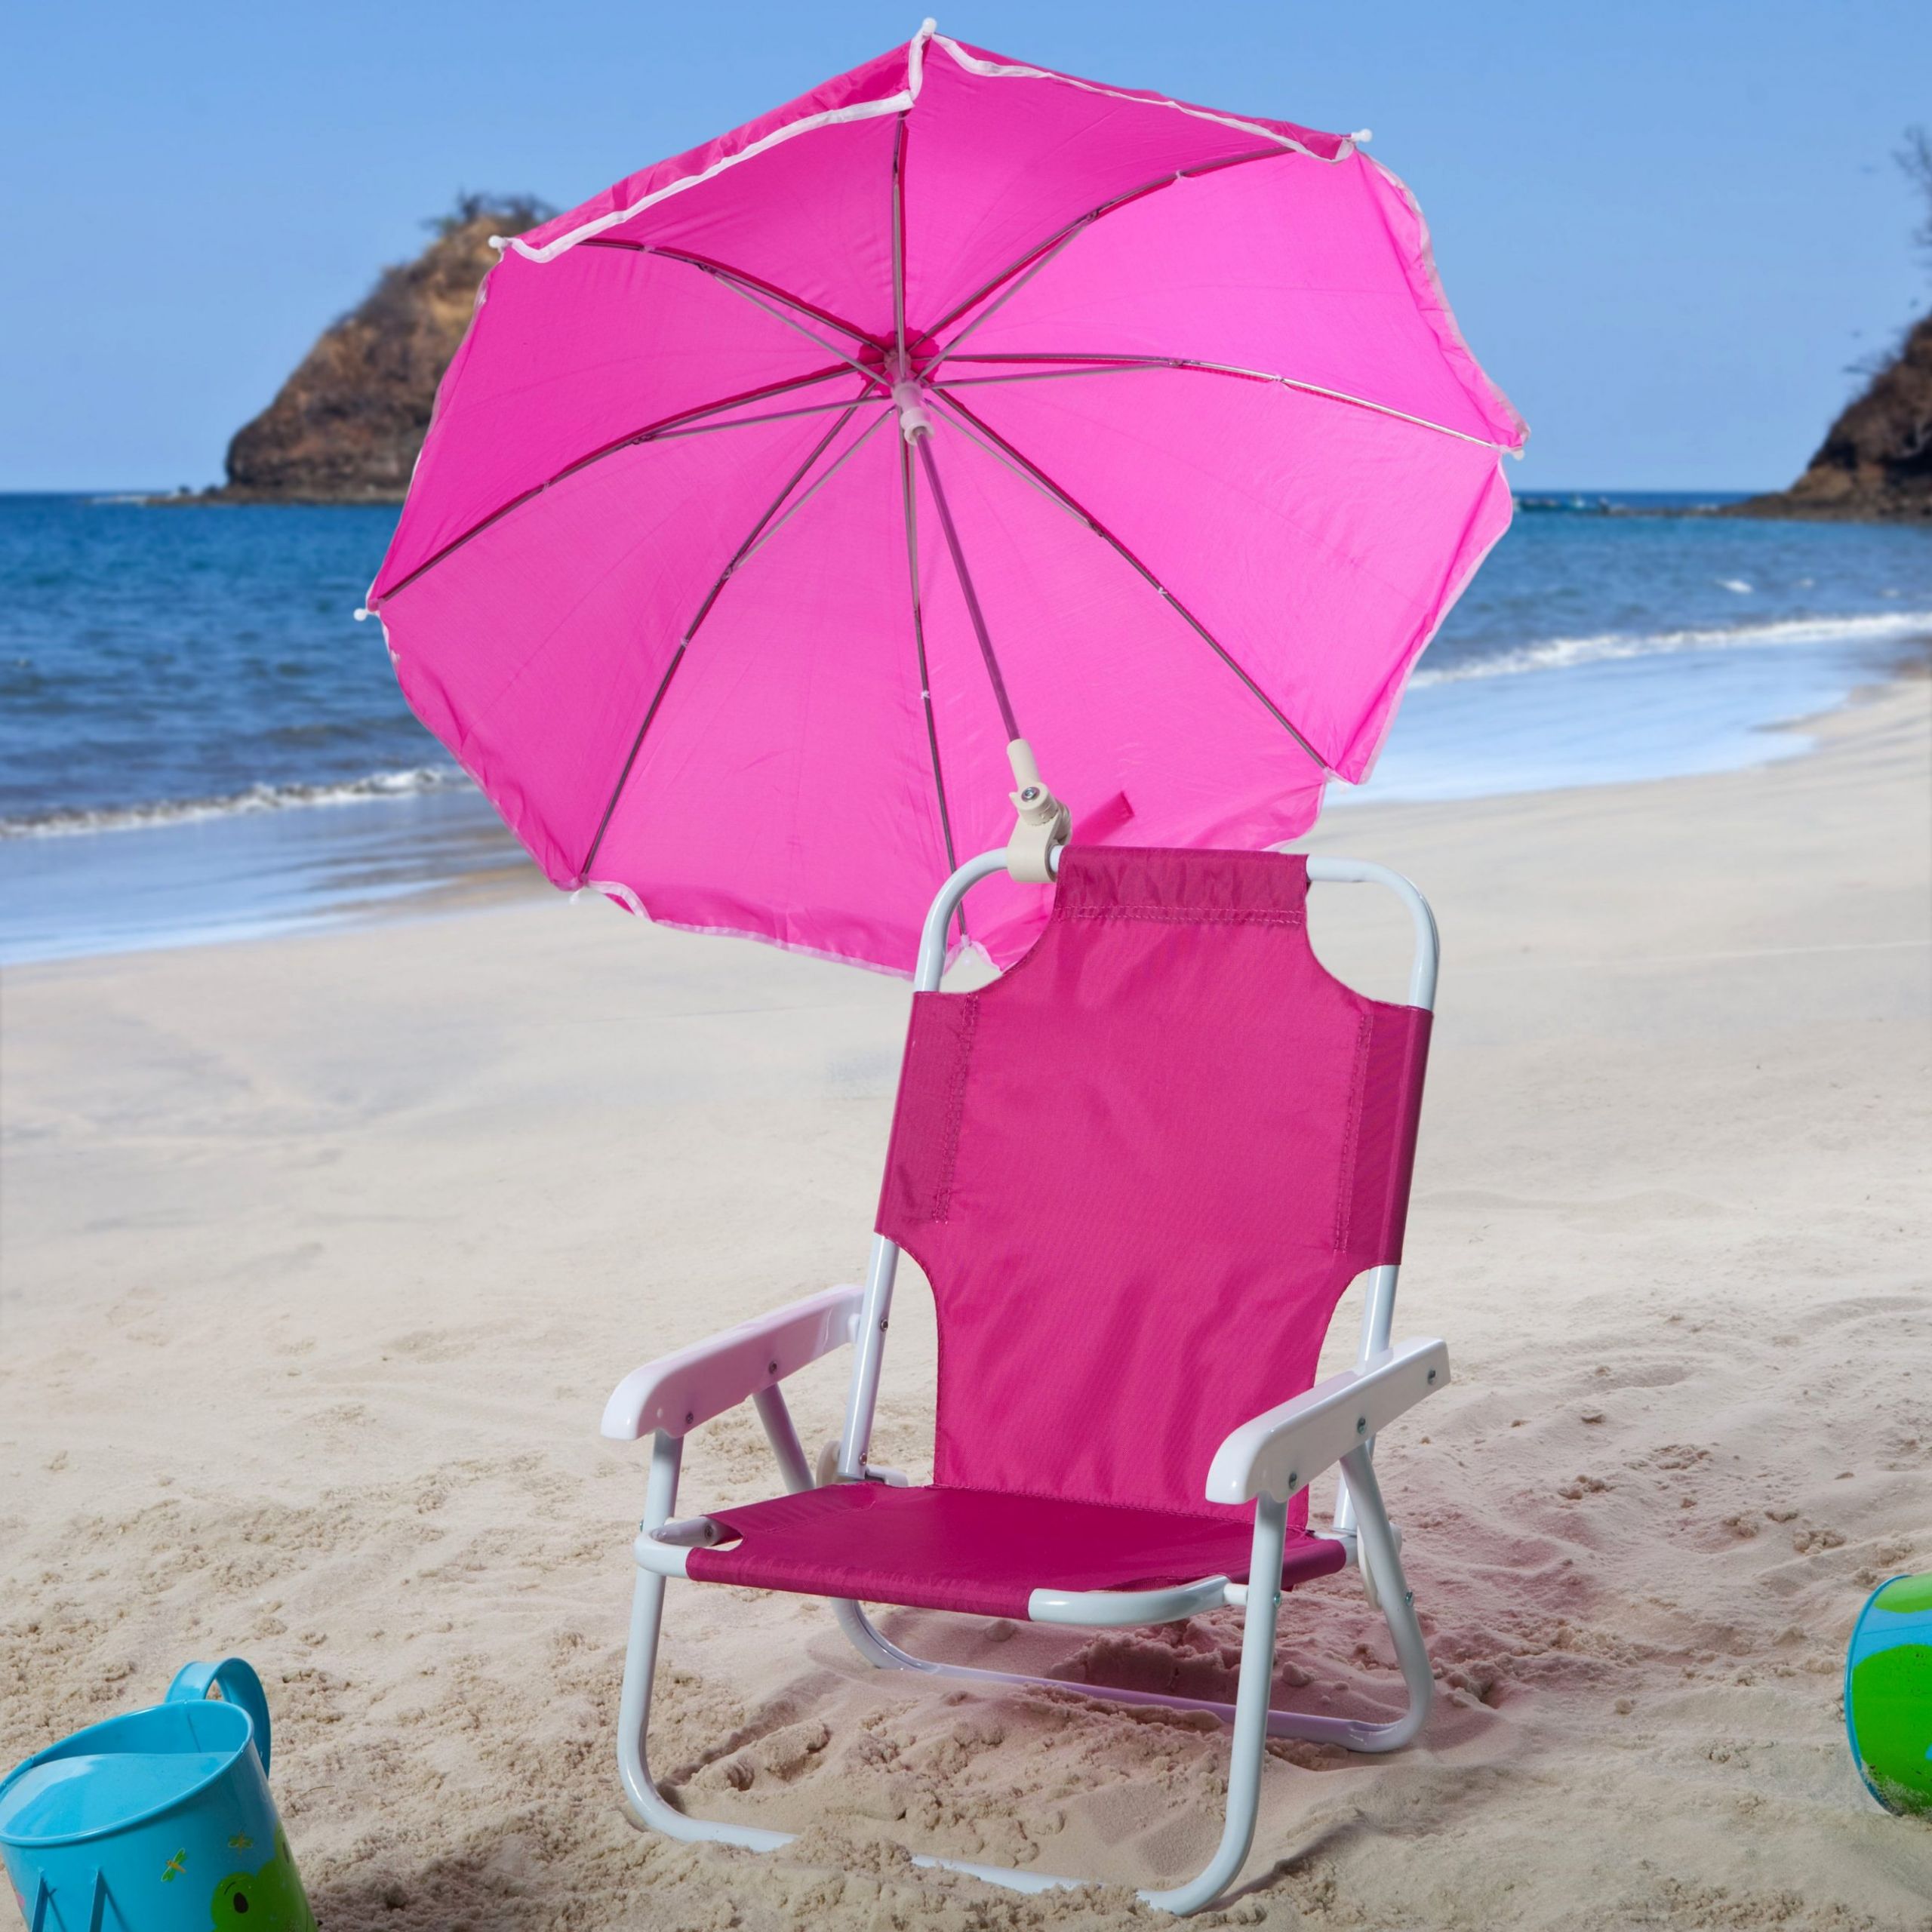 Kids Beach Chair With Umbrella
 Kids Beach Chair With Umbrella